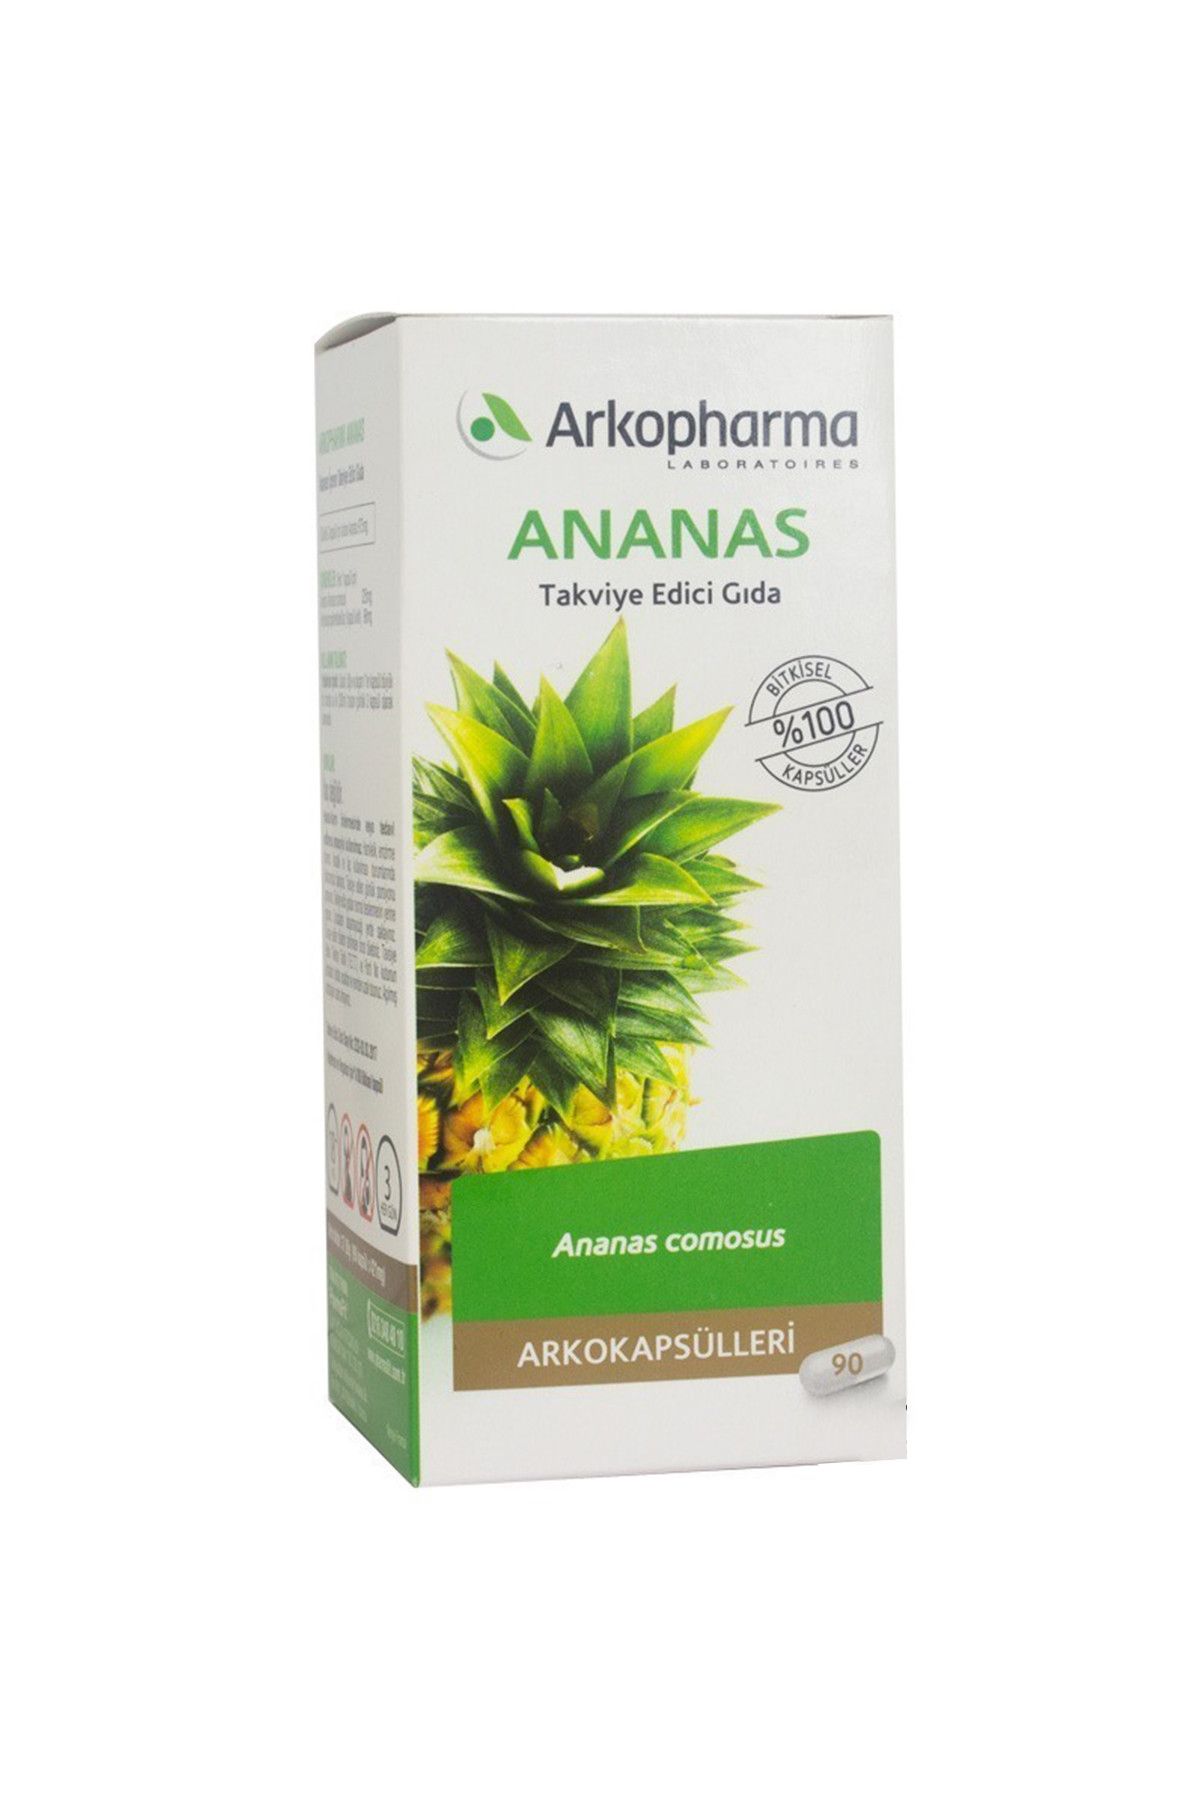 Arkopharma Ananas 400 Mg 90 Kapsul 3578832311016